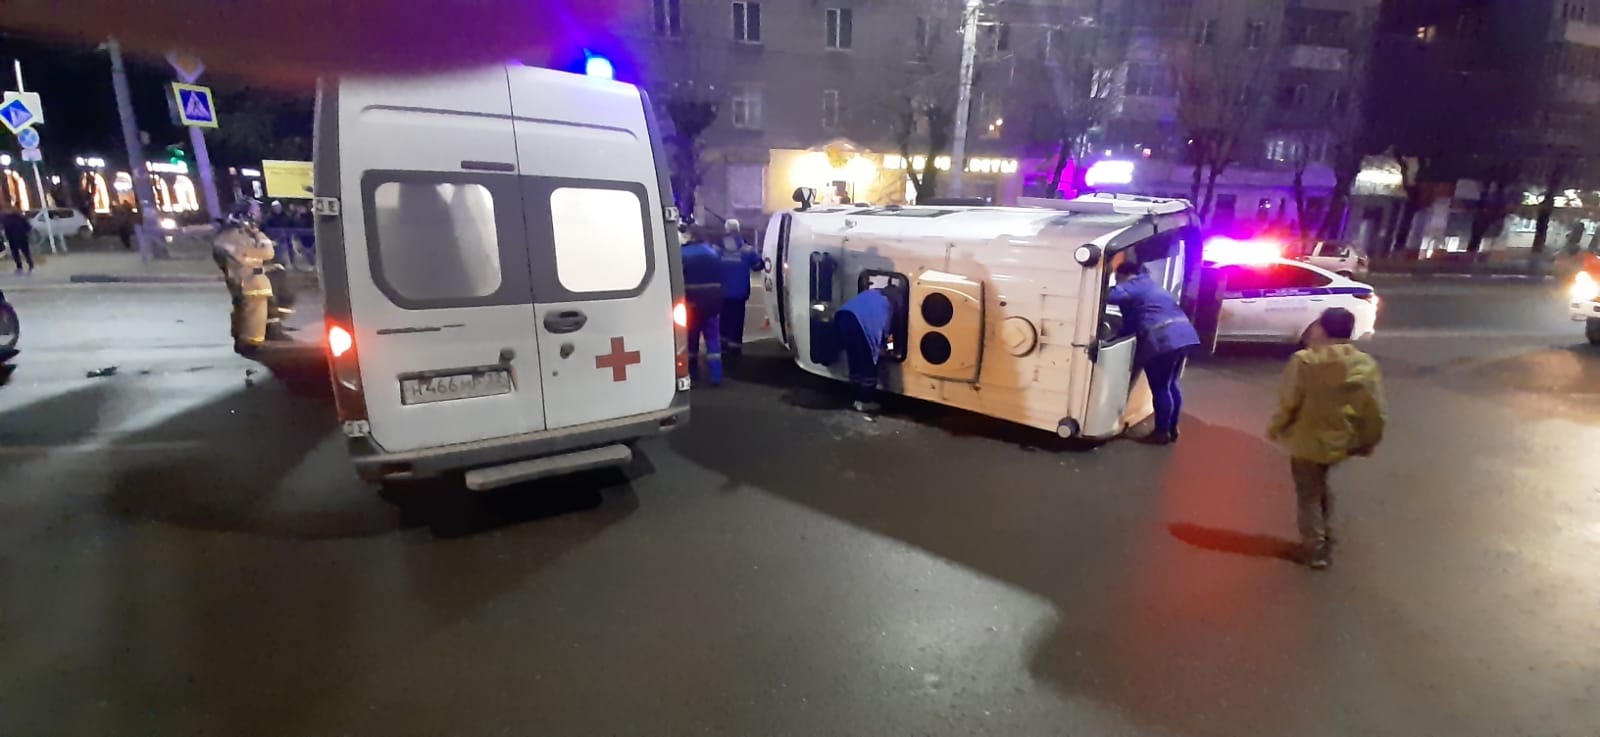 В Брянске скорая помощь упала на бок в результате ДТП, появились кадры с места событий